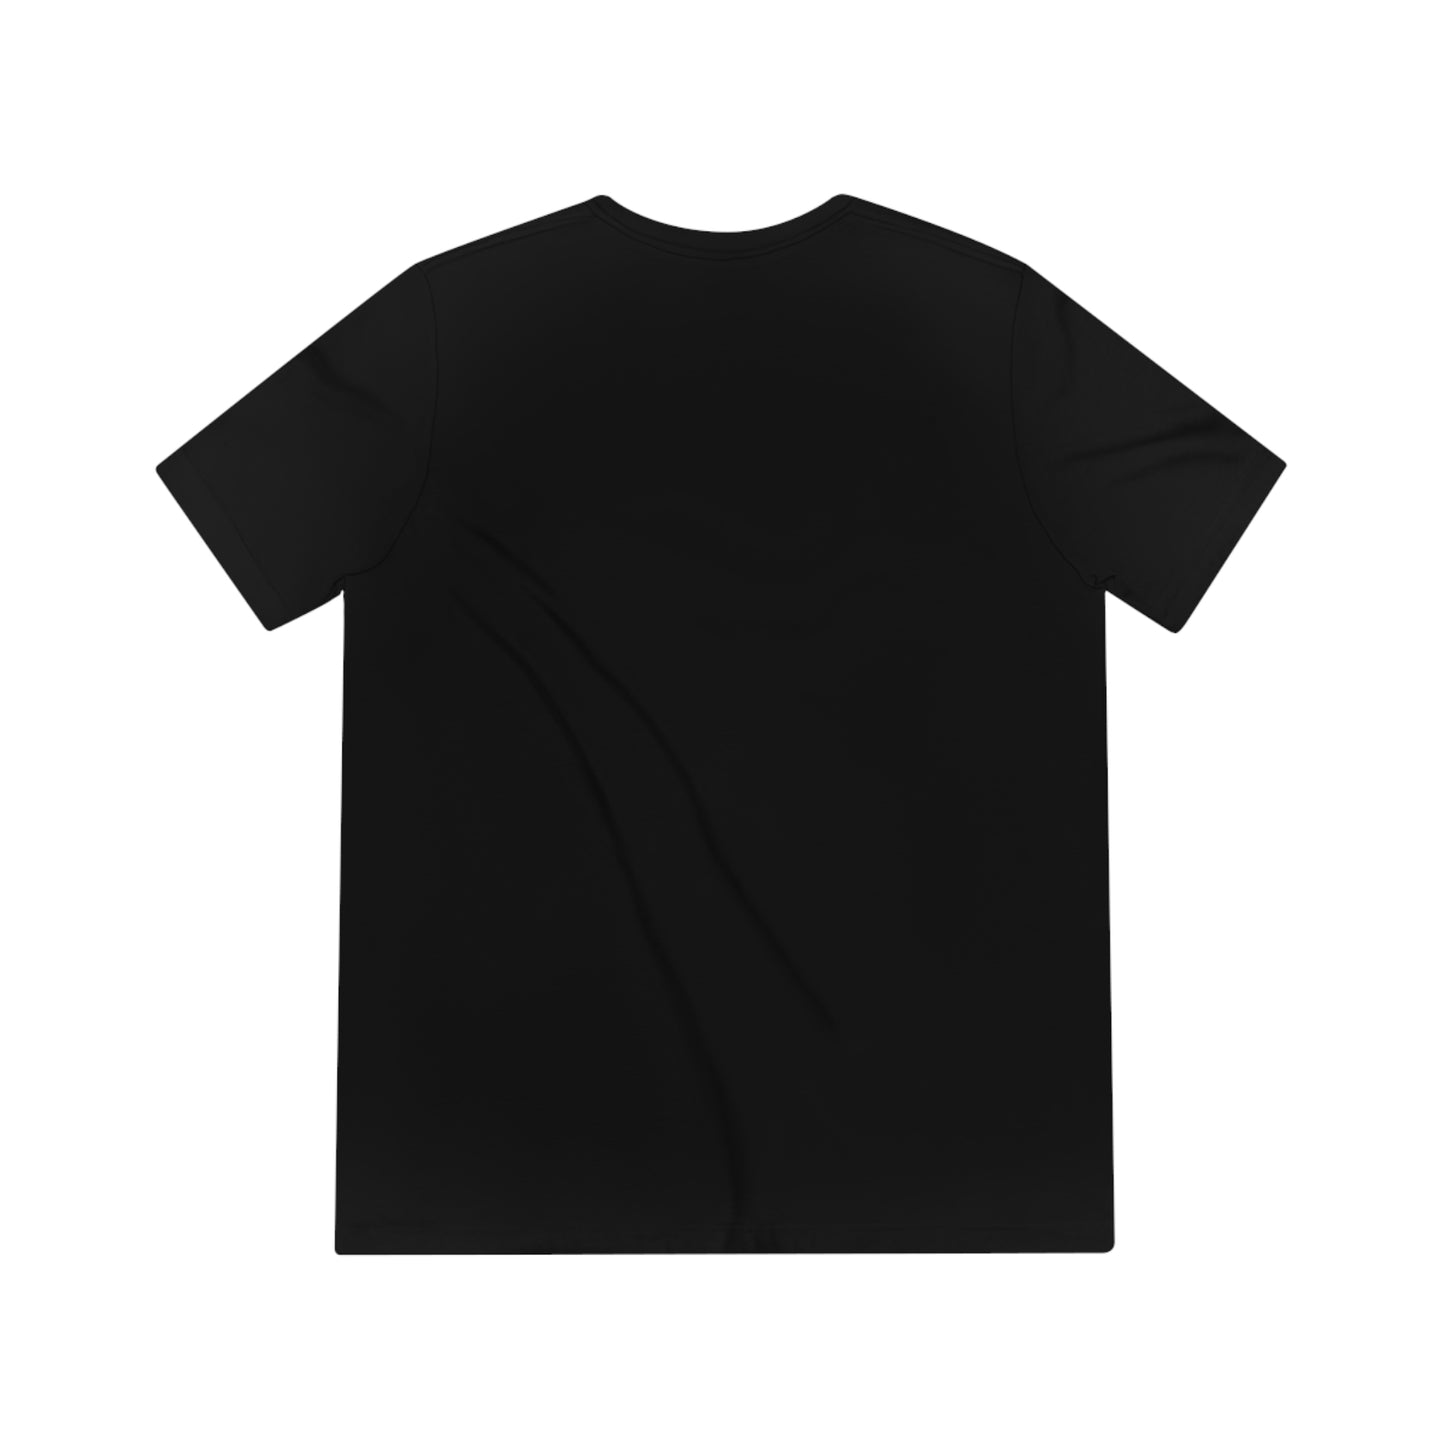 Vision Blurry - Kanye West Unisex T-Shirt